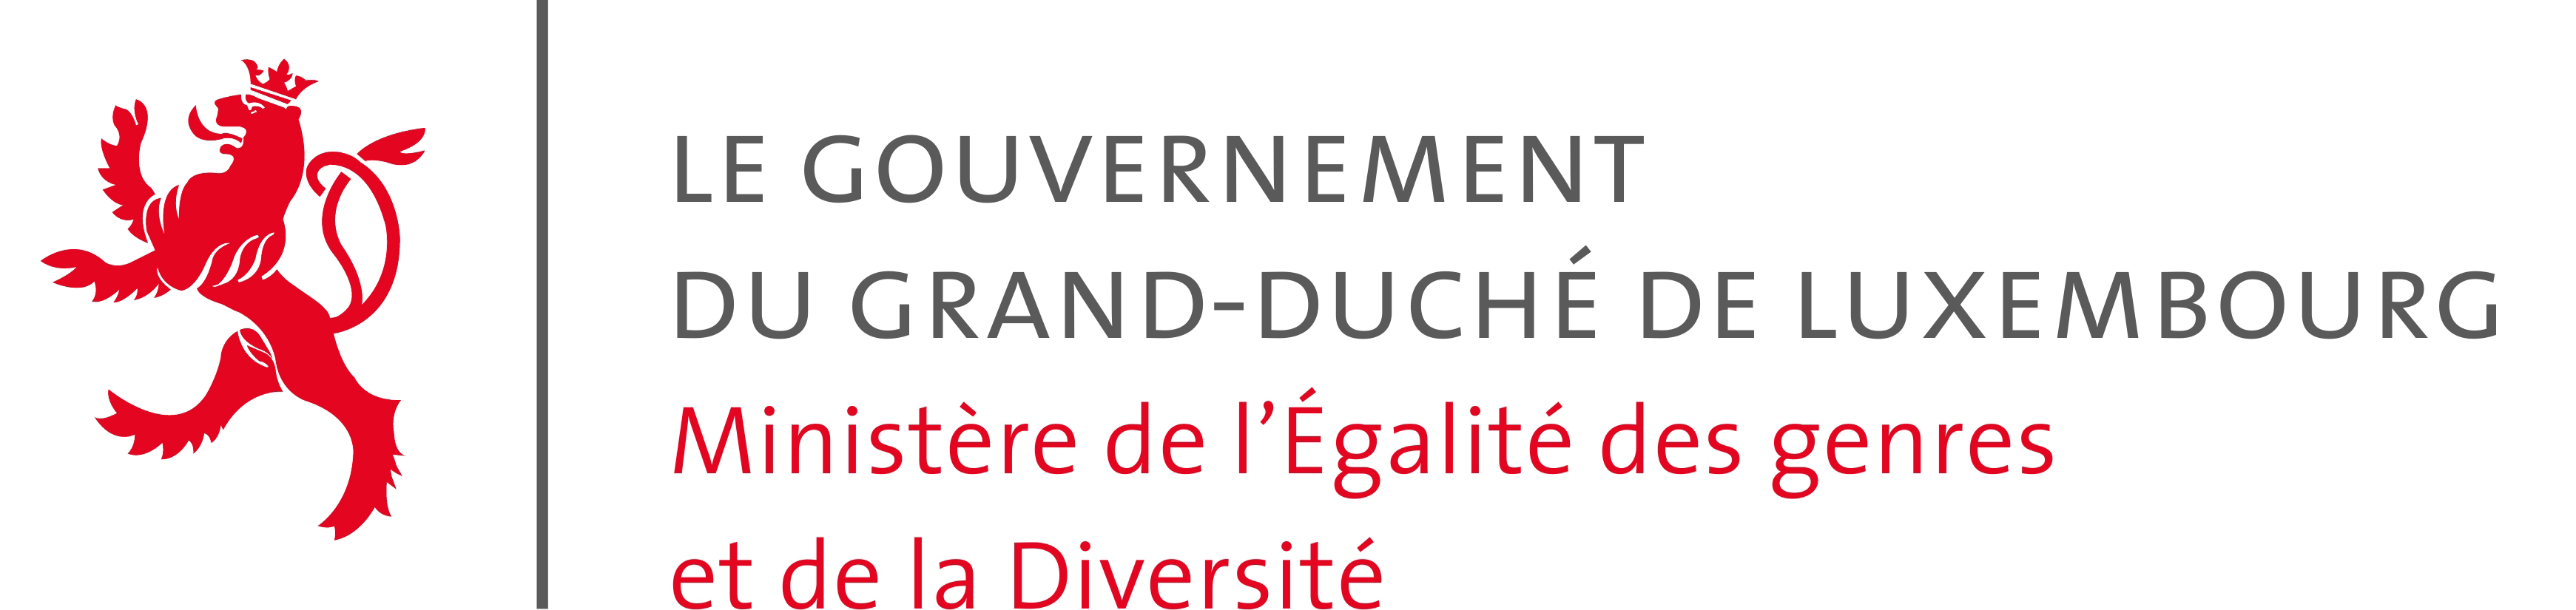 Le Gouvernement du Grand-Duché de Luxembourg - Ministère de l'Égalité des genres et de la Diversité